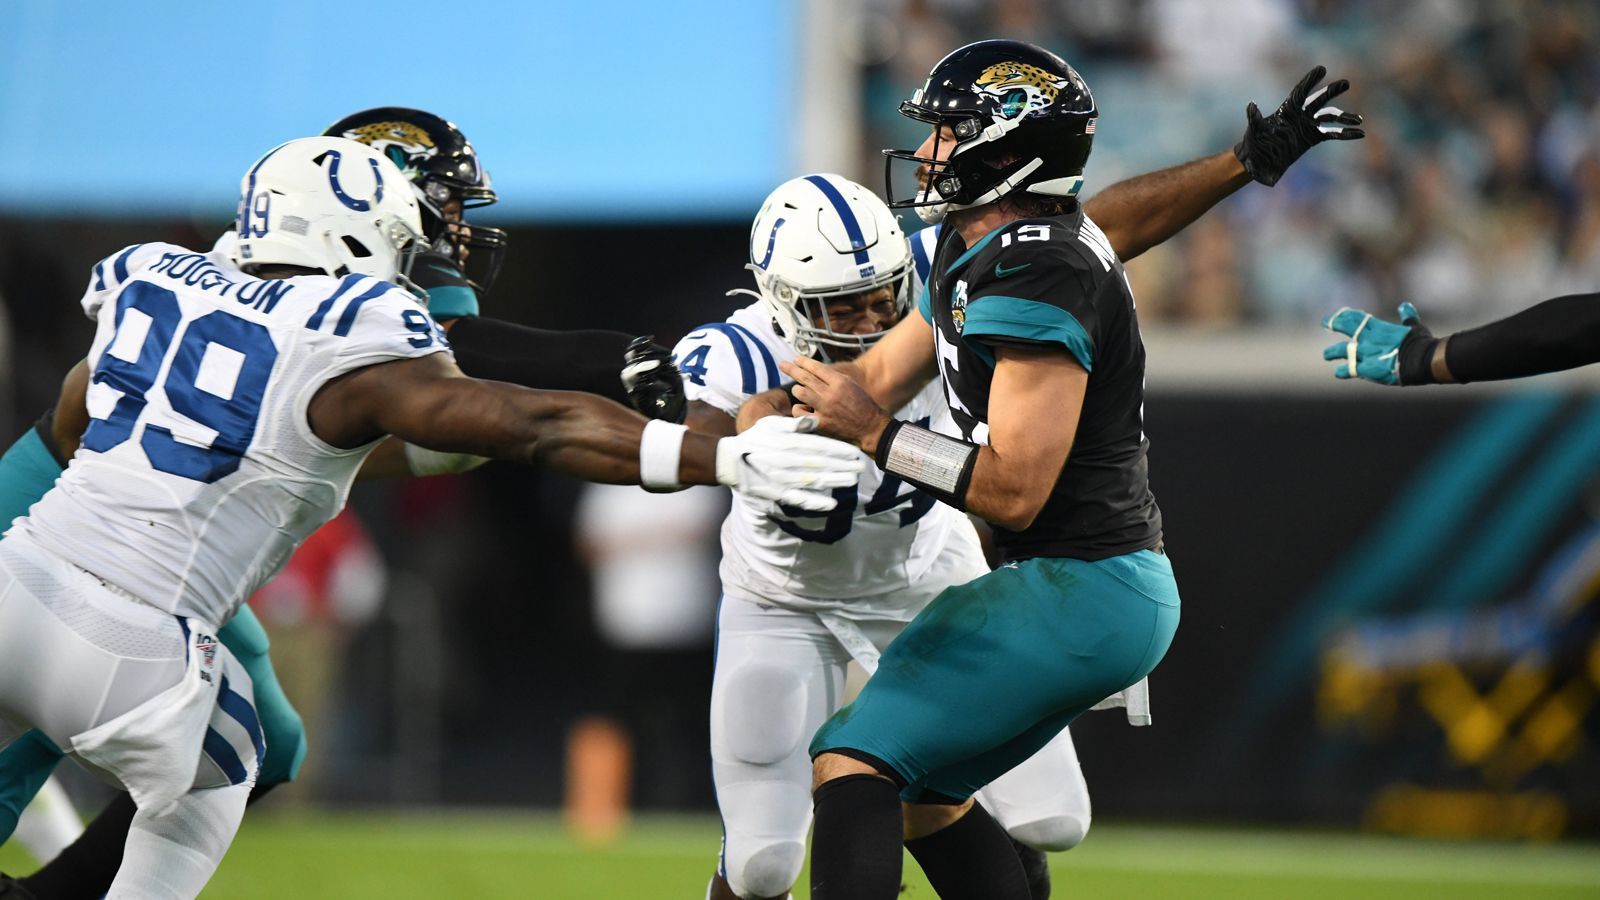 
                <strong>Indianapolis Colts at Jacksonville Jaguars</strong><br>
                Spengemann: "Die Colts-Defense ist zu gut, um den durch Abgänge geschwächten Jaguars einen erfolgreichen Start in die Saison zu erlauben."
              